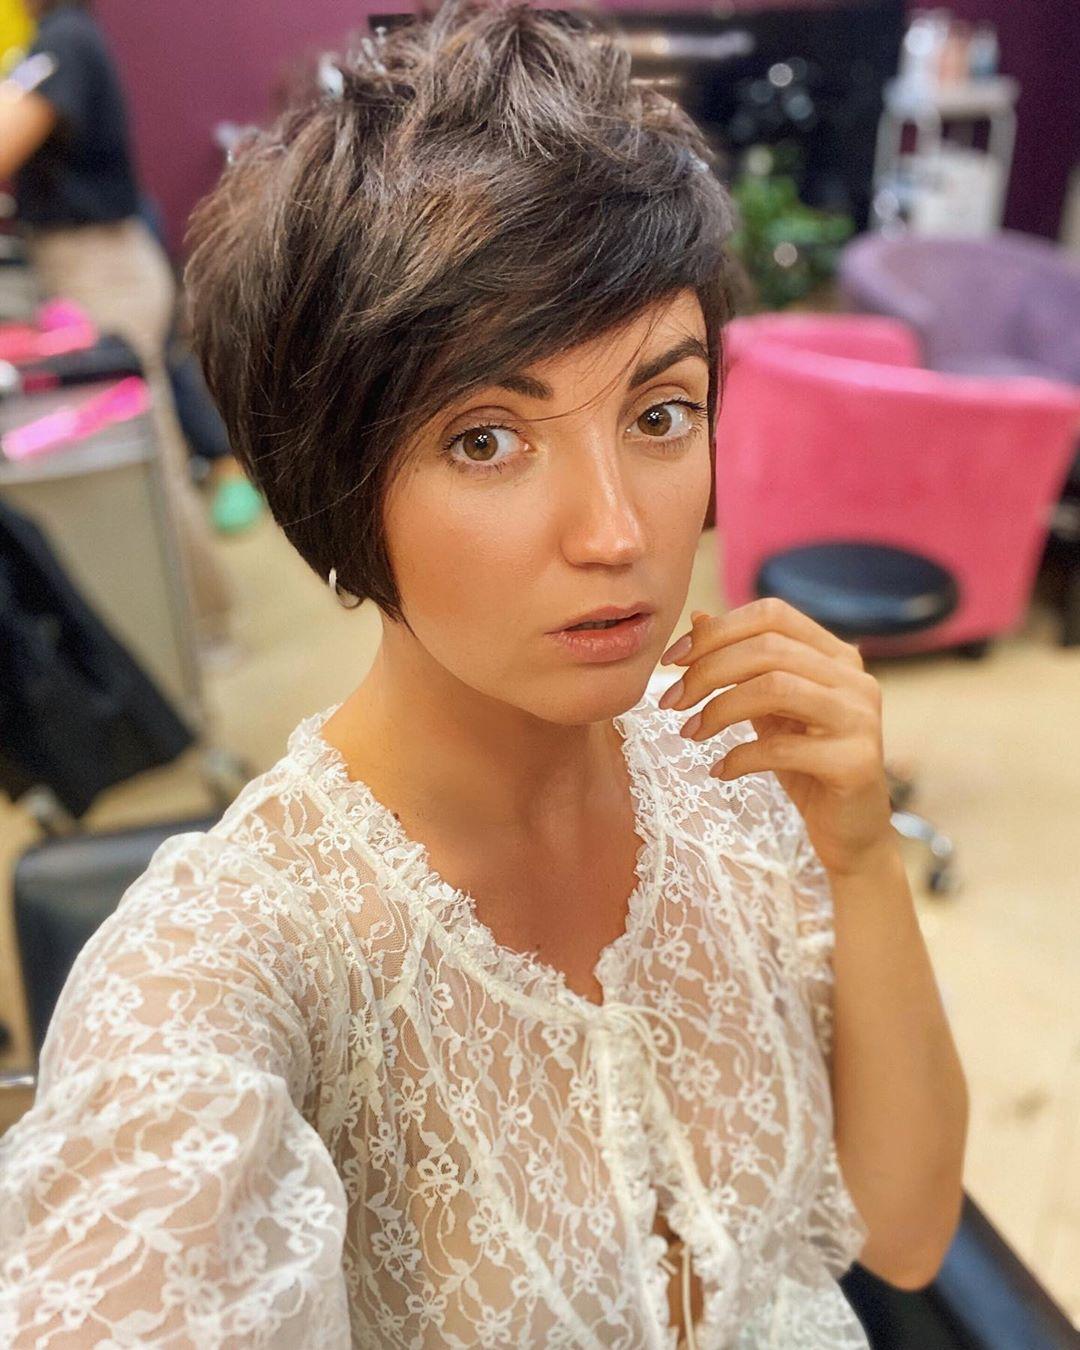 Цибульська з новою зачіскою / фото instagram.com/cybulskaya